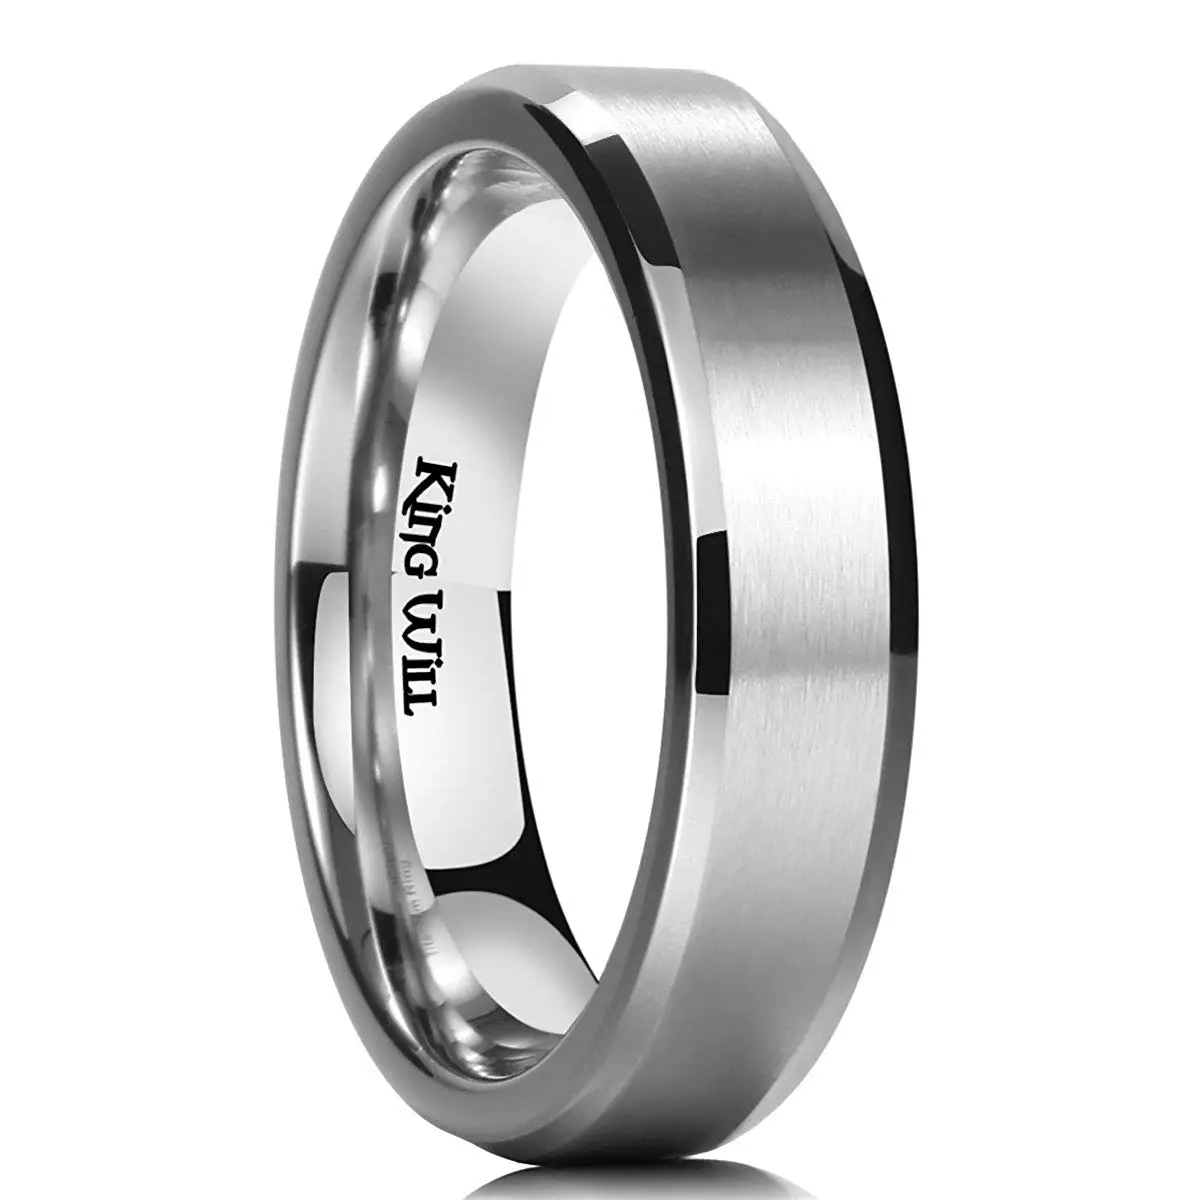 Титановое кольцо купить. Кольцо Титаниум. Bevelled кольцо 5 мм. Обручальные кольца комфорт фит. Титановые кольца.